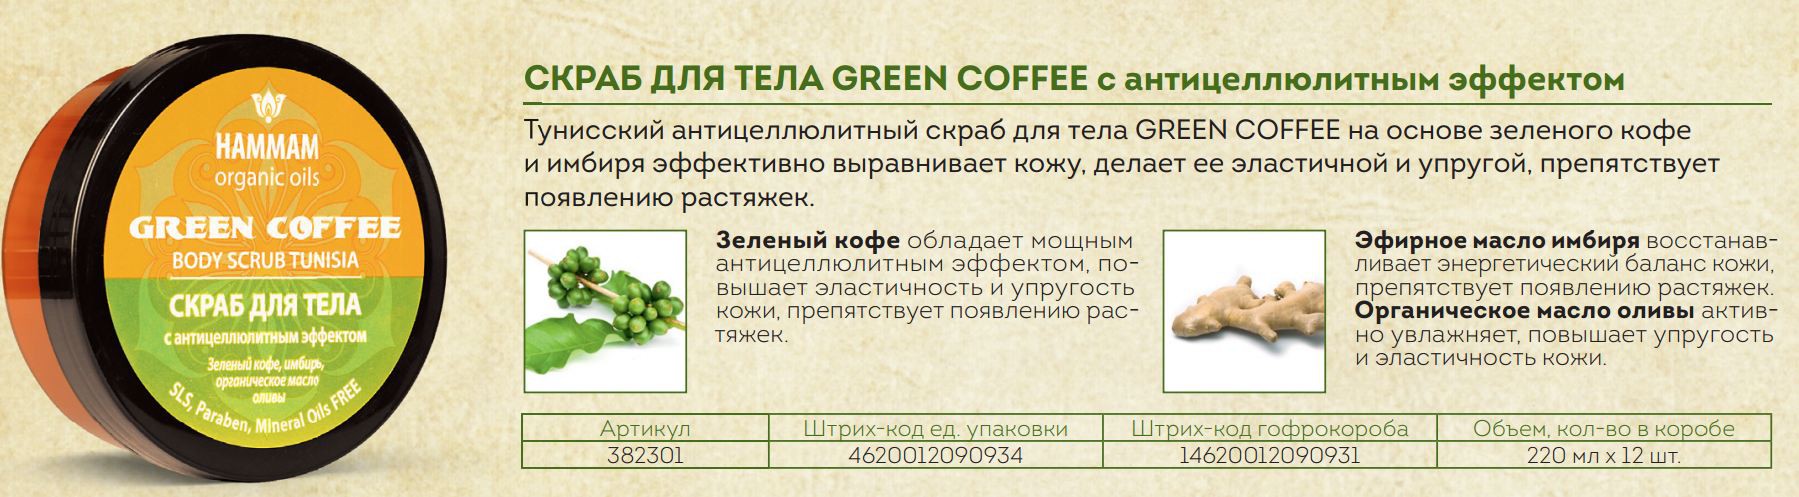 382301    GREEN COFFEE    84,61+%